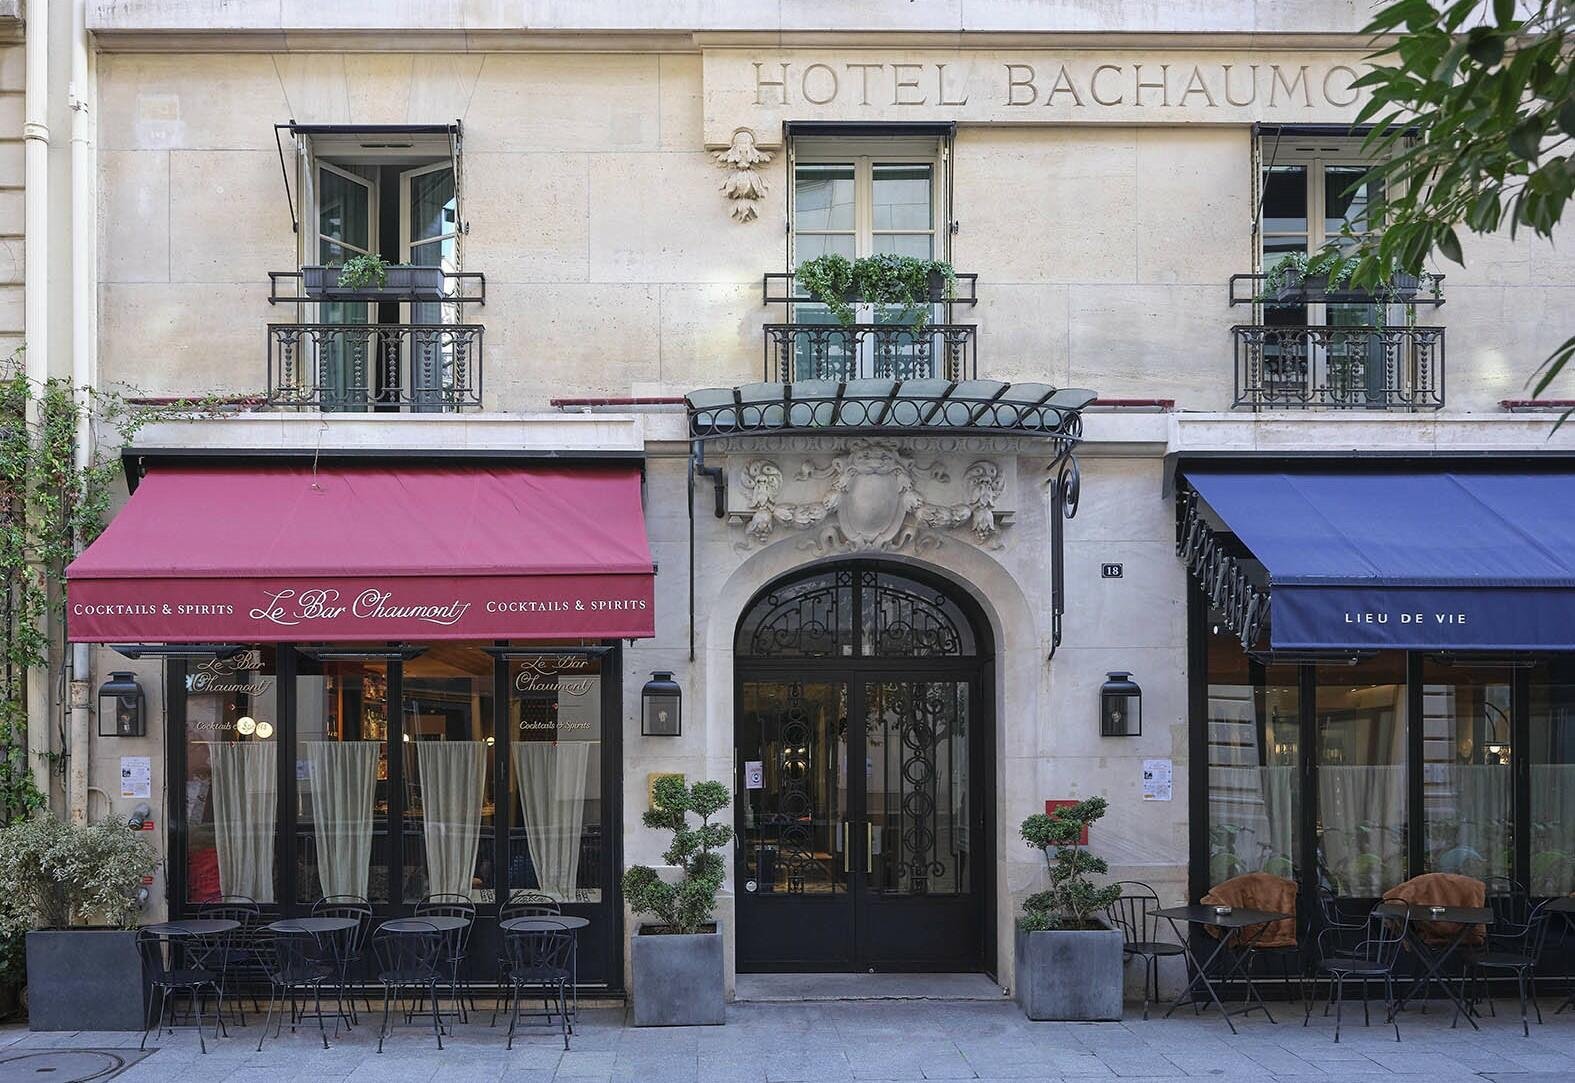 Hôtel Bachaumont | Hôtel de luxe séjour Paris